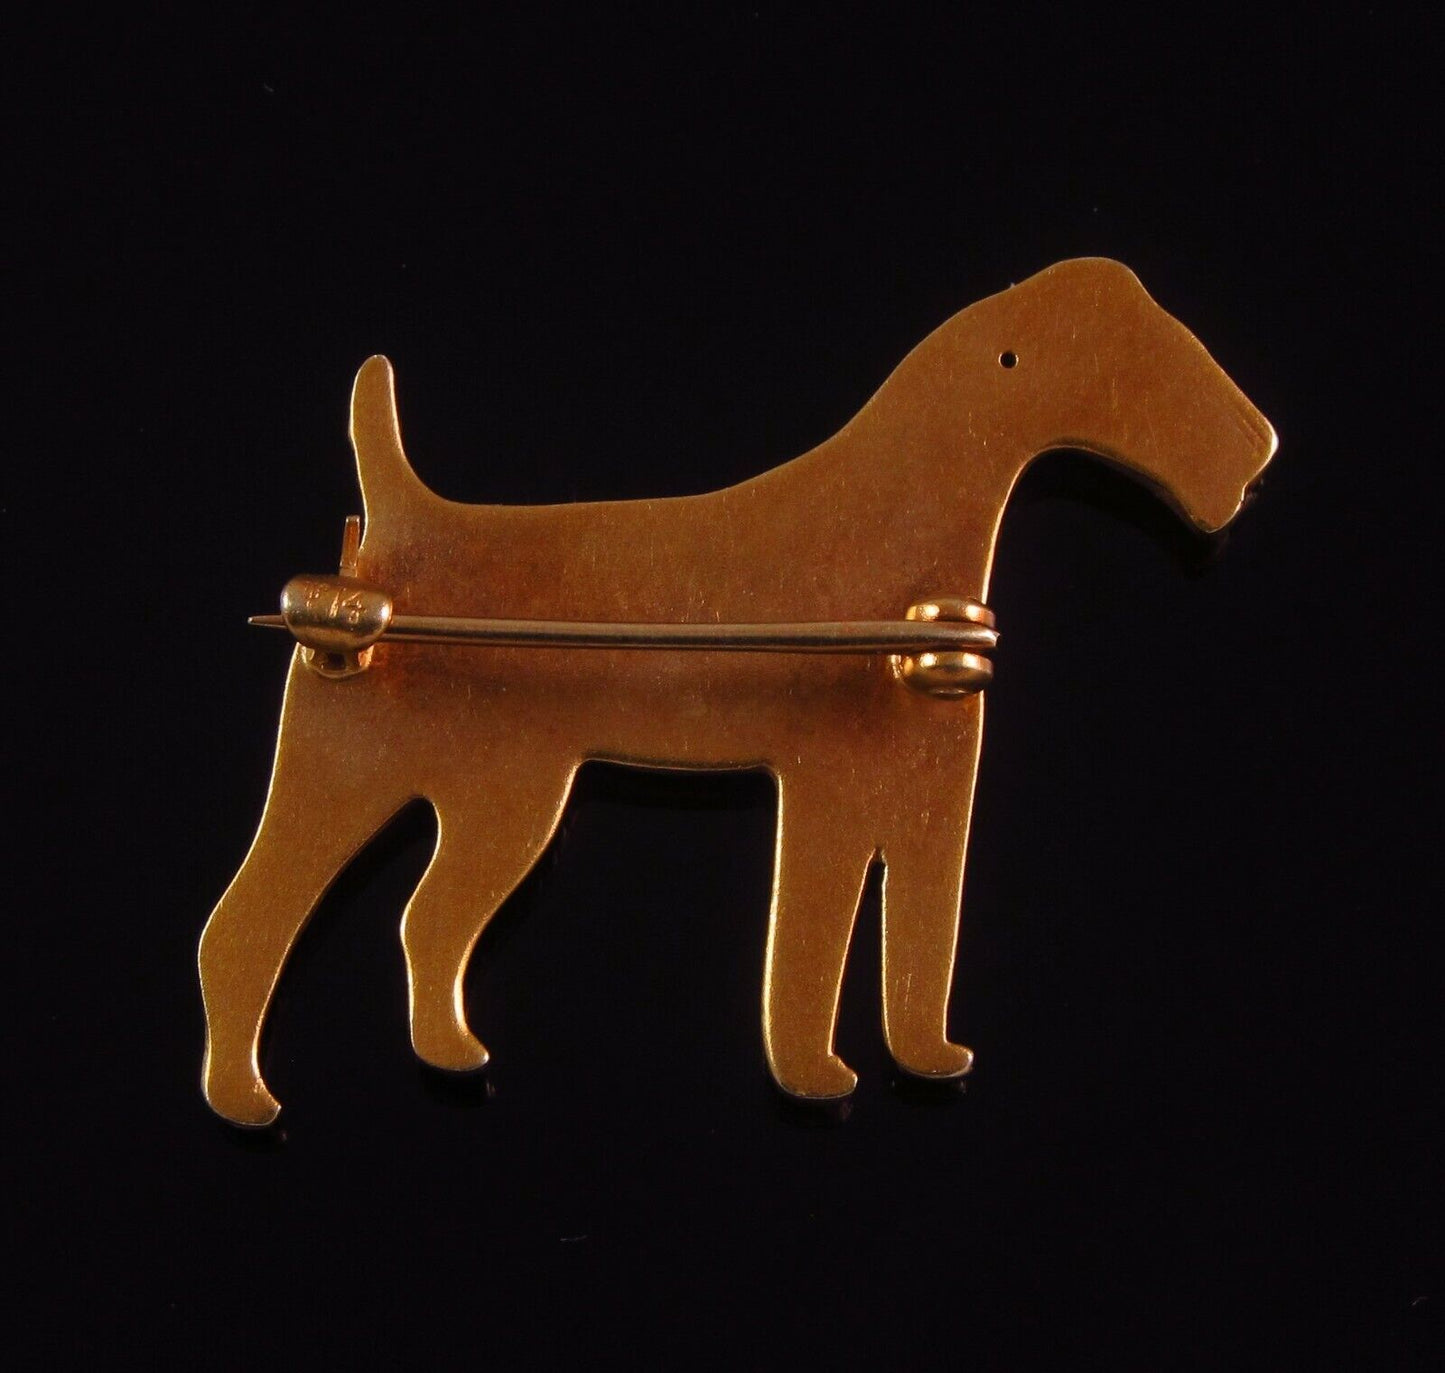 Vintage 14K Gold Enamel Sloan & Co. Irish Terrier Dog Brooch Pin With Ruby Eye